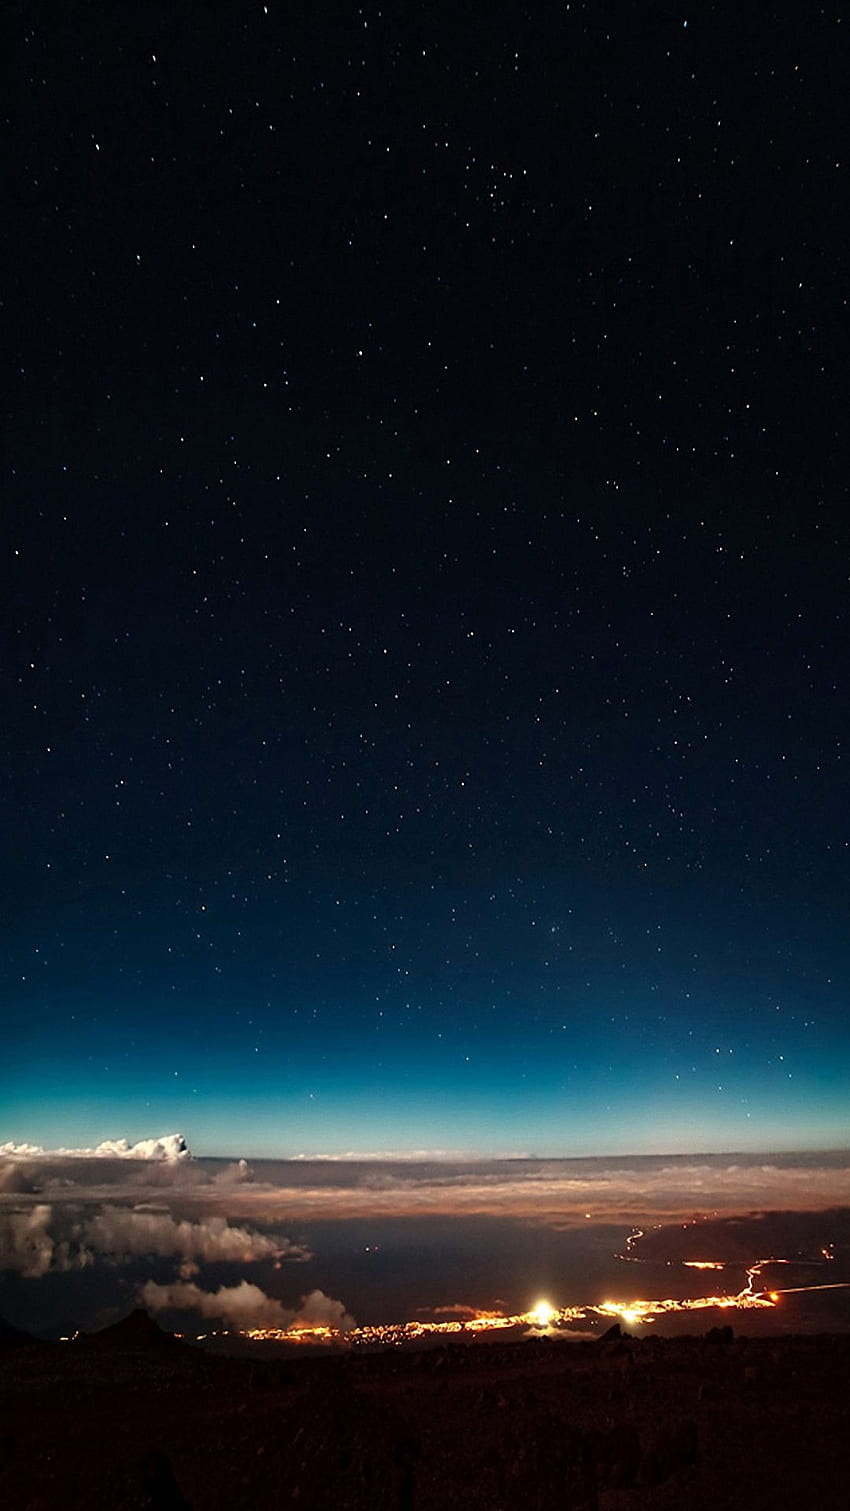 Ngắm màn đêm bao phủ bầu trời bằng hình nền Night Sky iPhone Wallpaper, tạo sự lãng mạn và huyền ảo cho màn hình điện thoại của bạn. Đây là một tác phẩm nghệ thuật sống động và đẹp, cho phép bạn thư giãn và trải nghiệm vẻ đẹp bầu trời đầy sao từ mọi góc nhìn. 